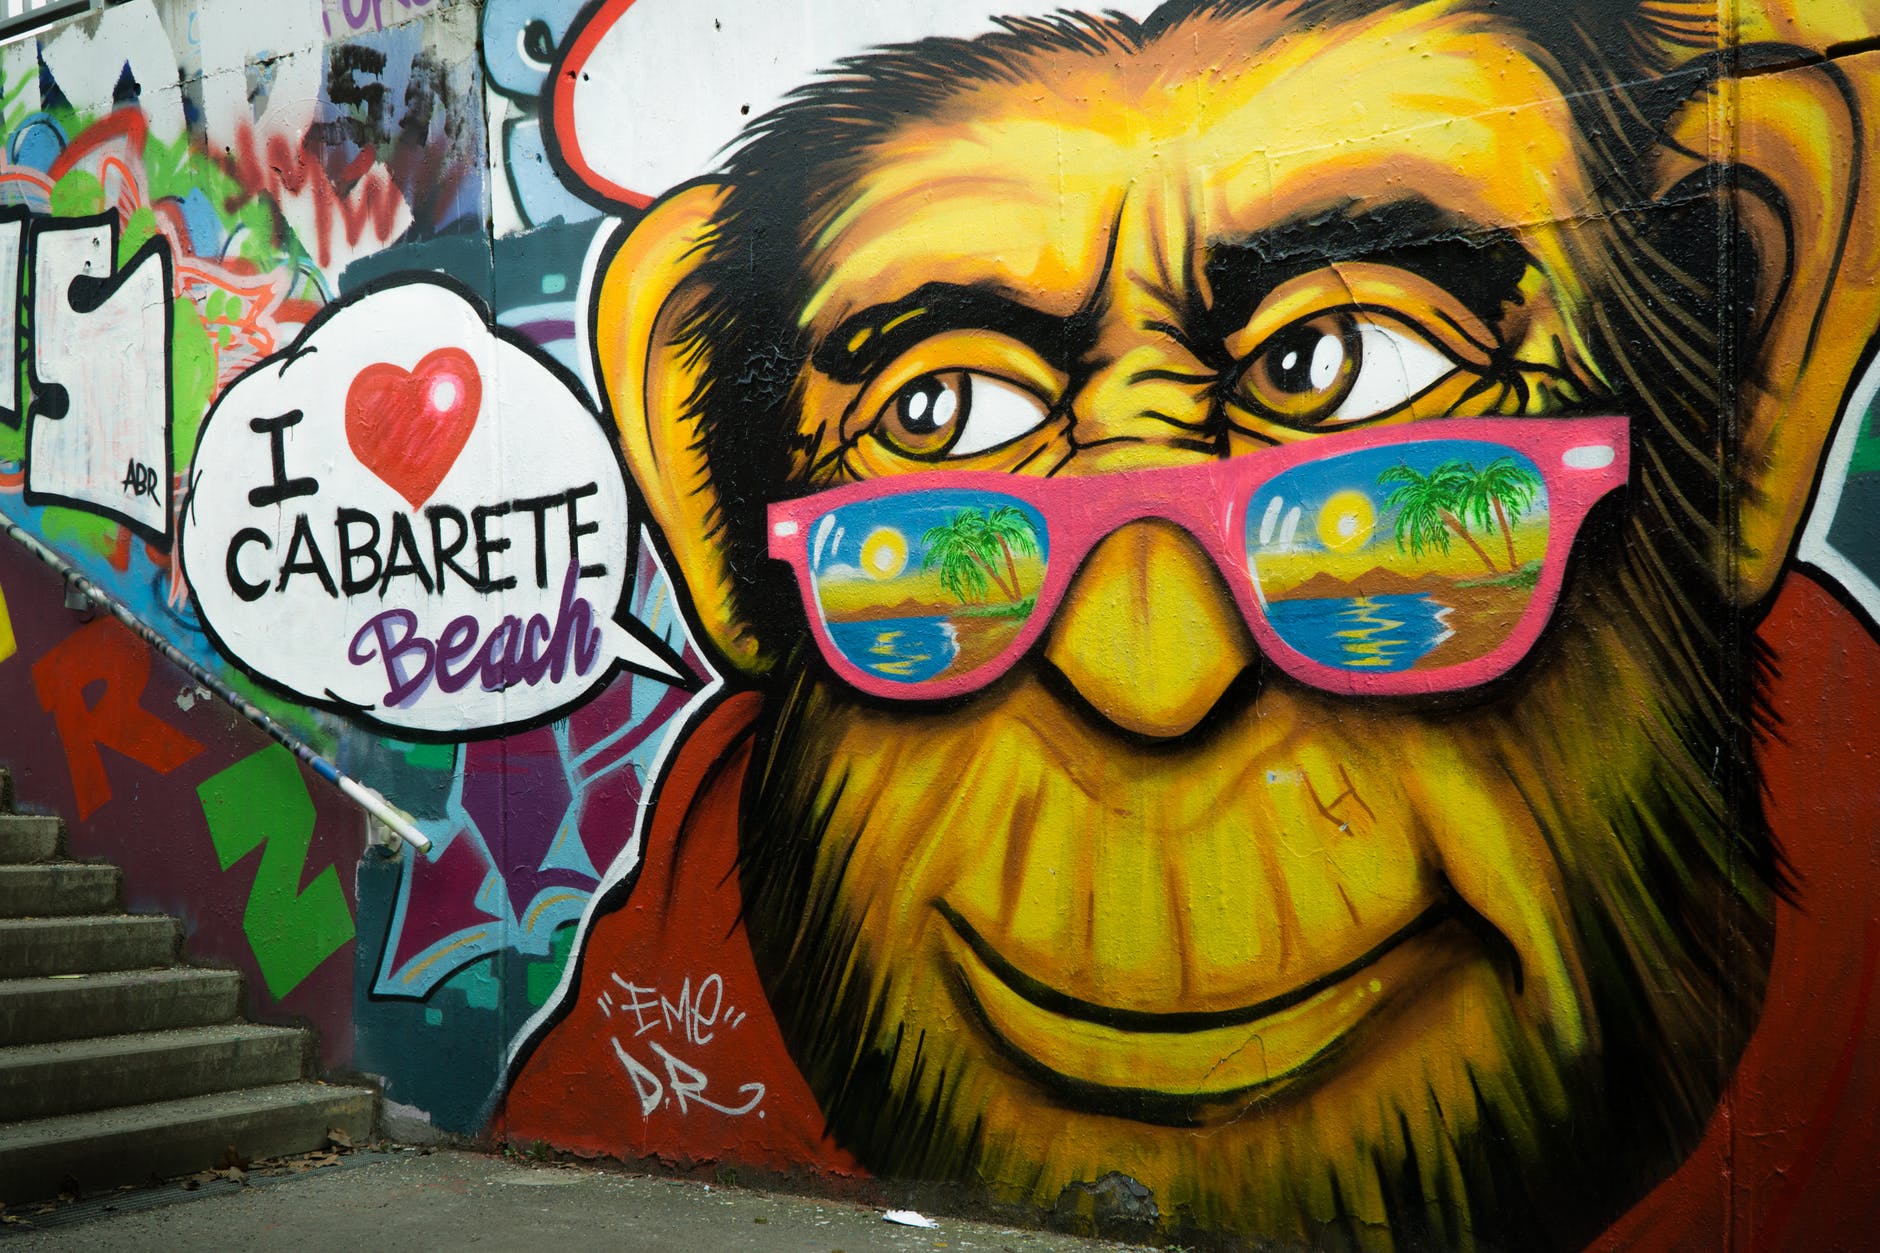 gorilla wearing pink sunglasses graffiti